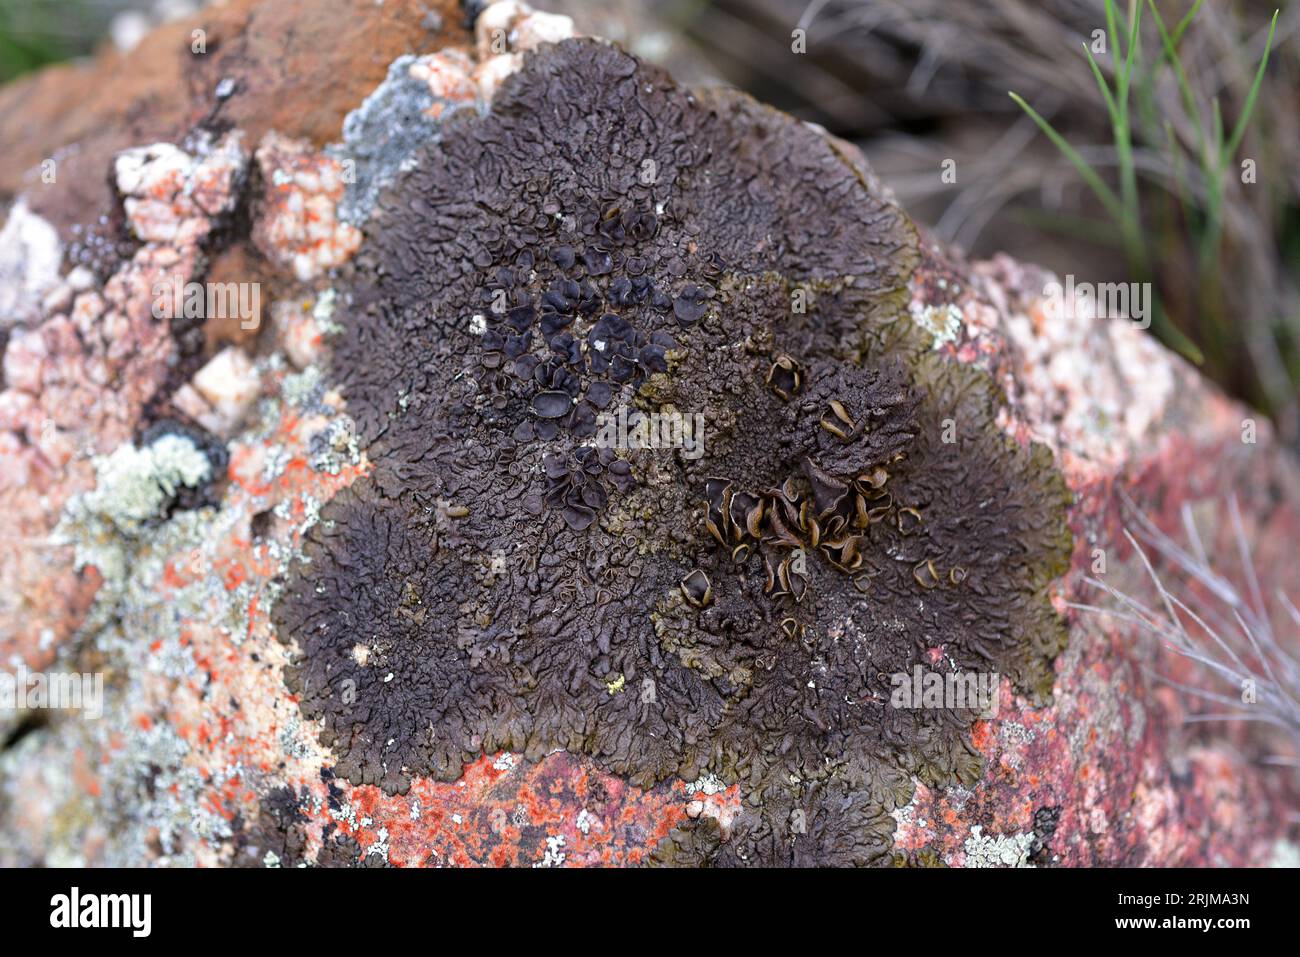 Parmelia pulla, Neofuscelia pulla oder Xanthoparmelia pulla ist ein Lichen. Dieses Foto wurde in Alquezar, Huesca, Aragon, Spanien aufgenommen. Stockfoto